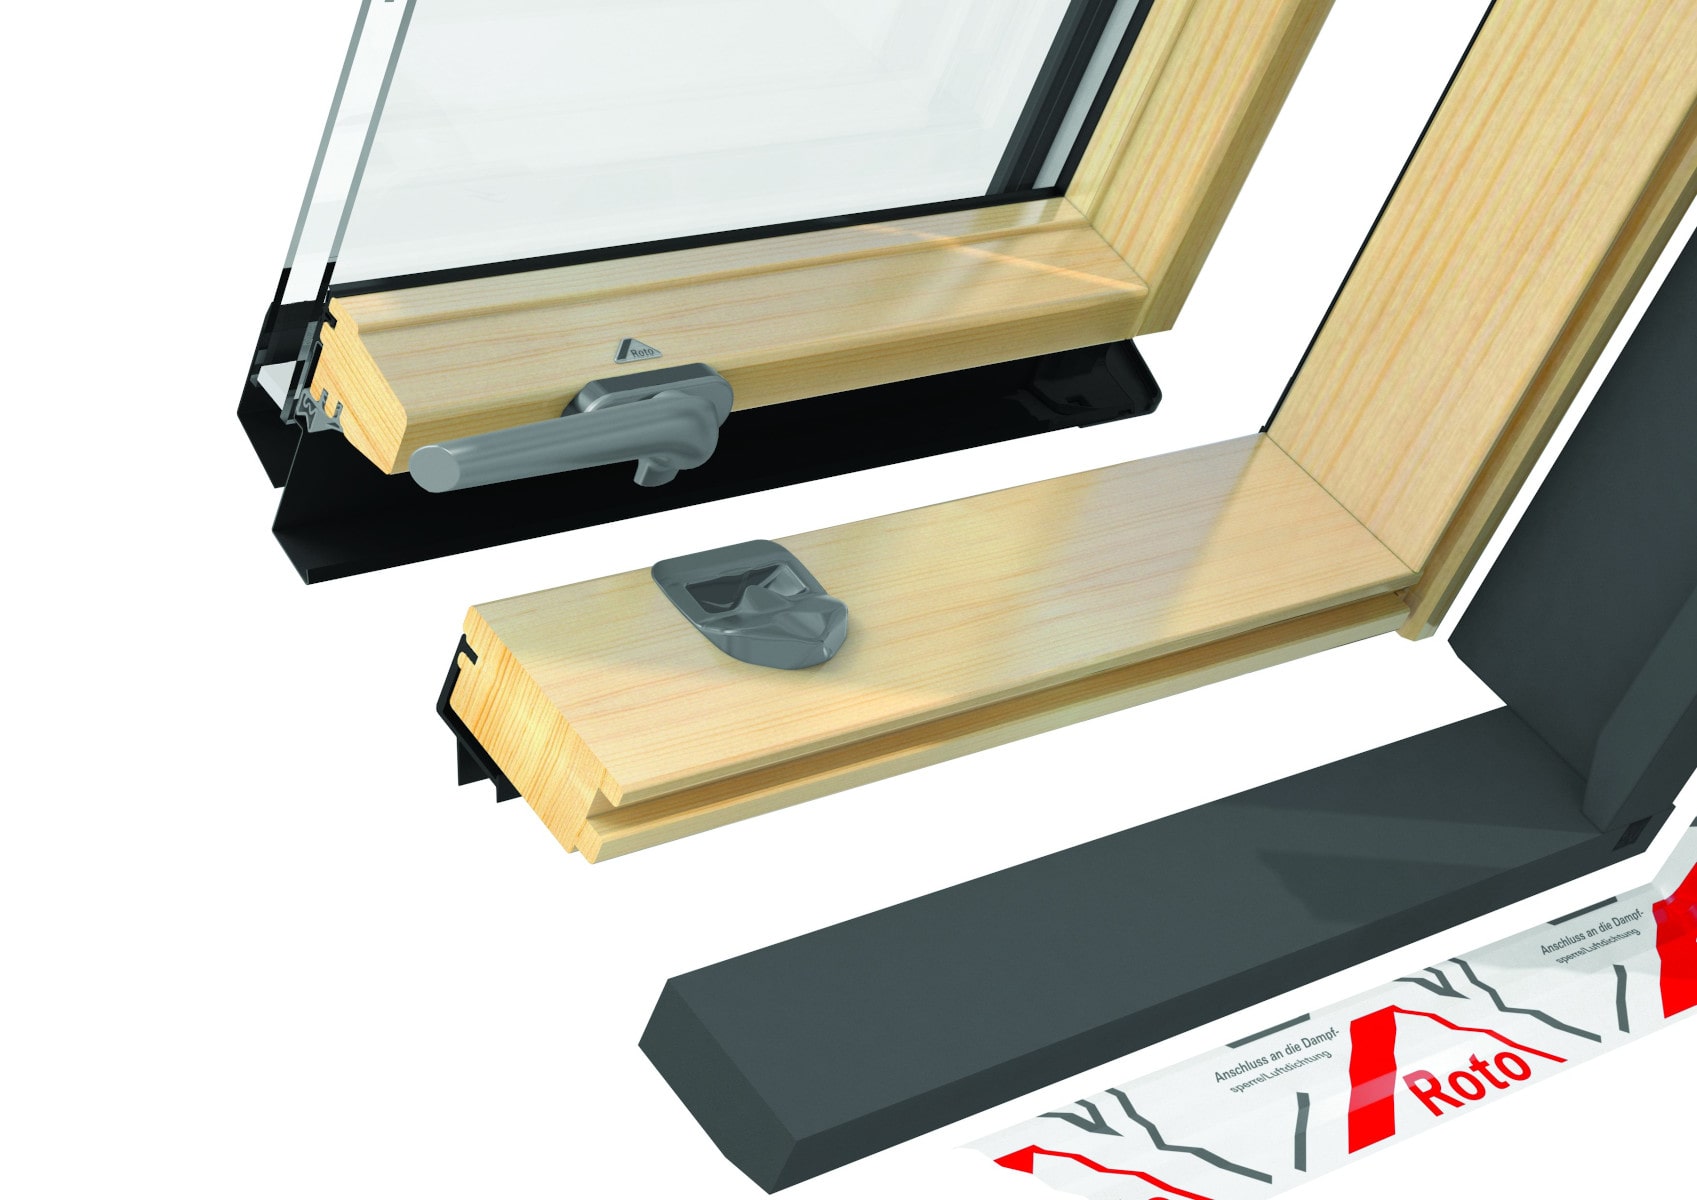 Окно мансардное деревянное с нижней ручкой Roto R45 H200. 1 камерный стеклопакет. ThermoBlock WD.